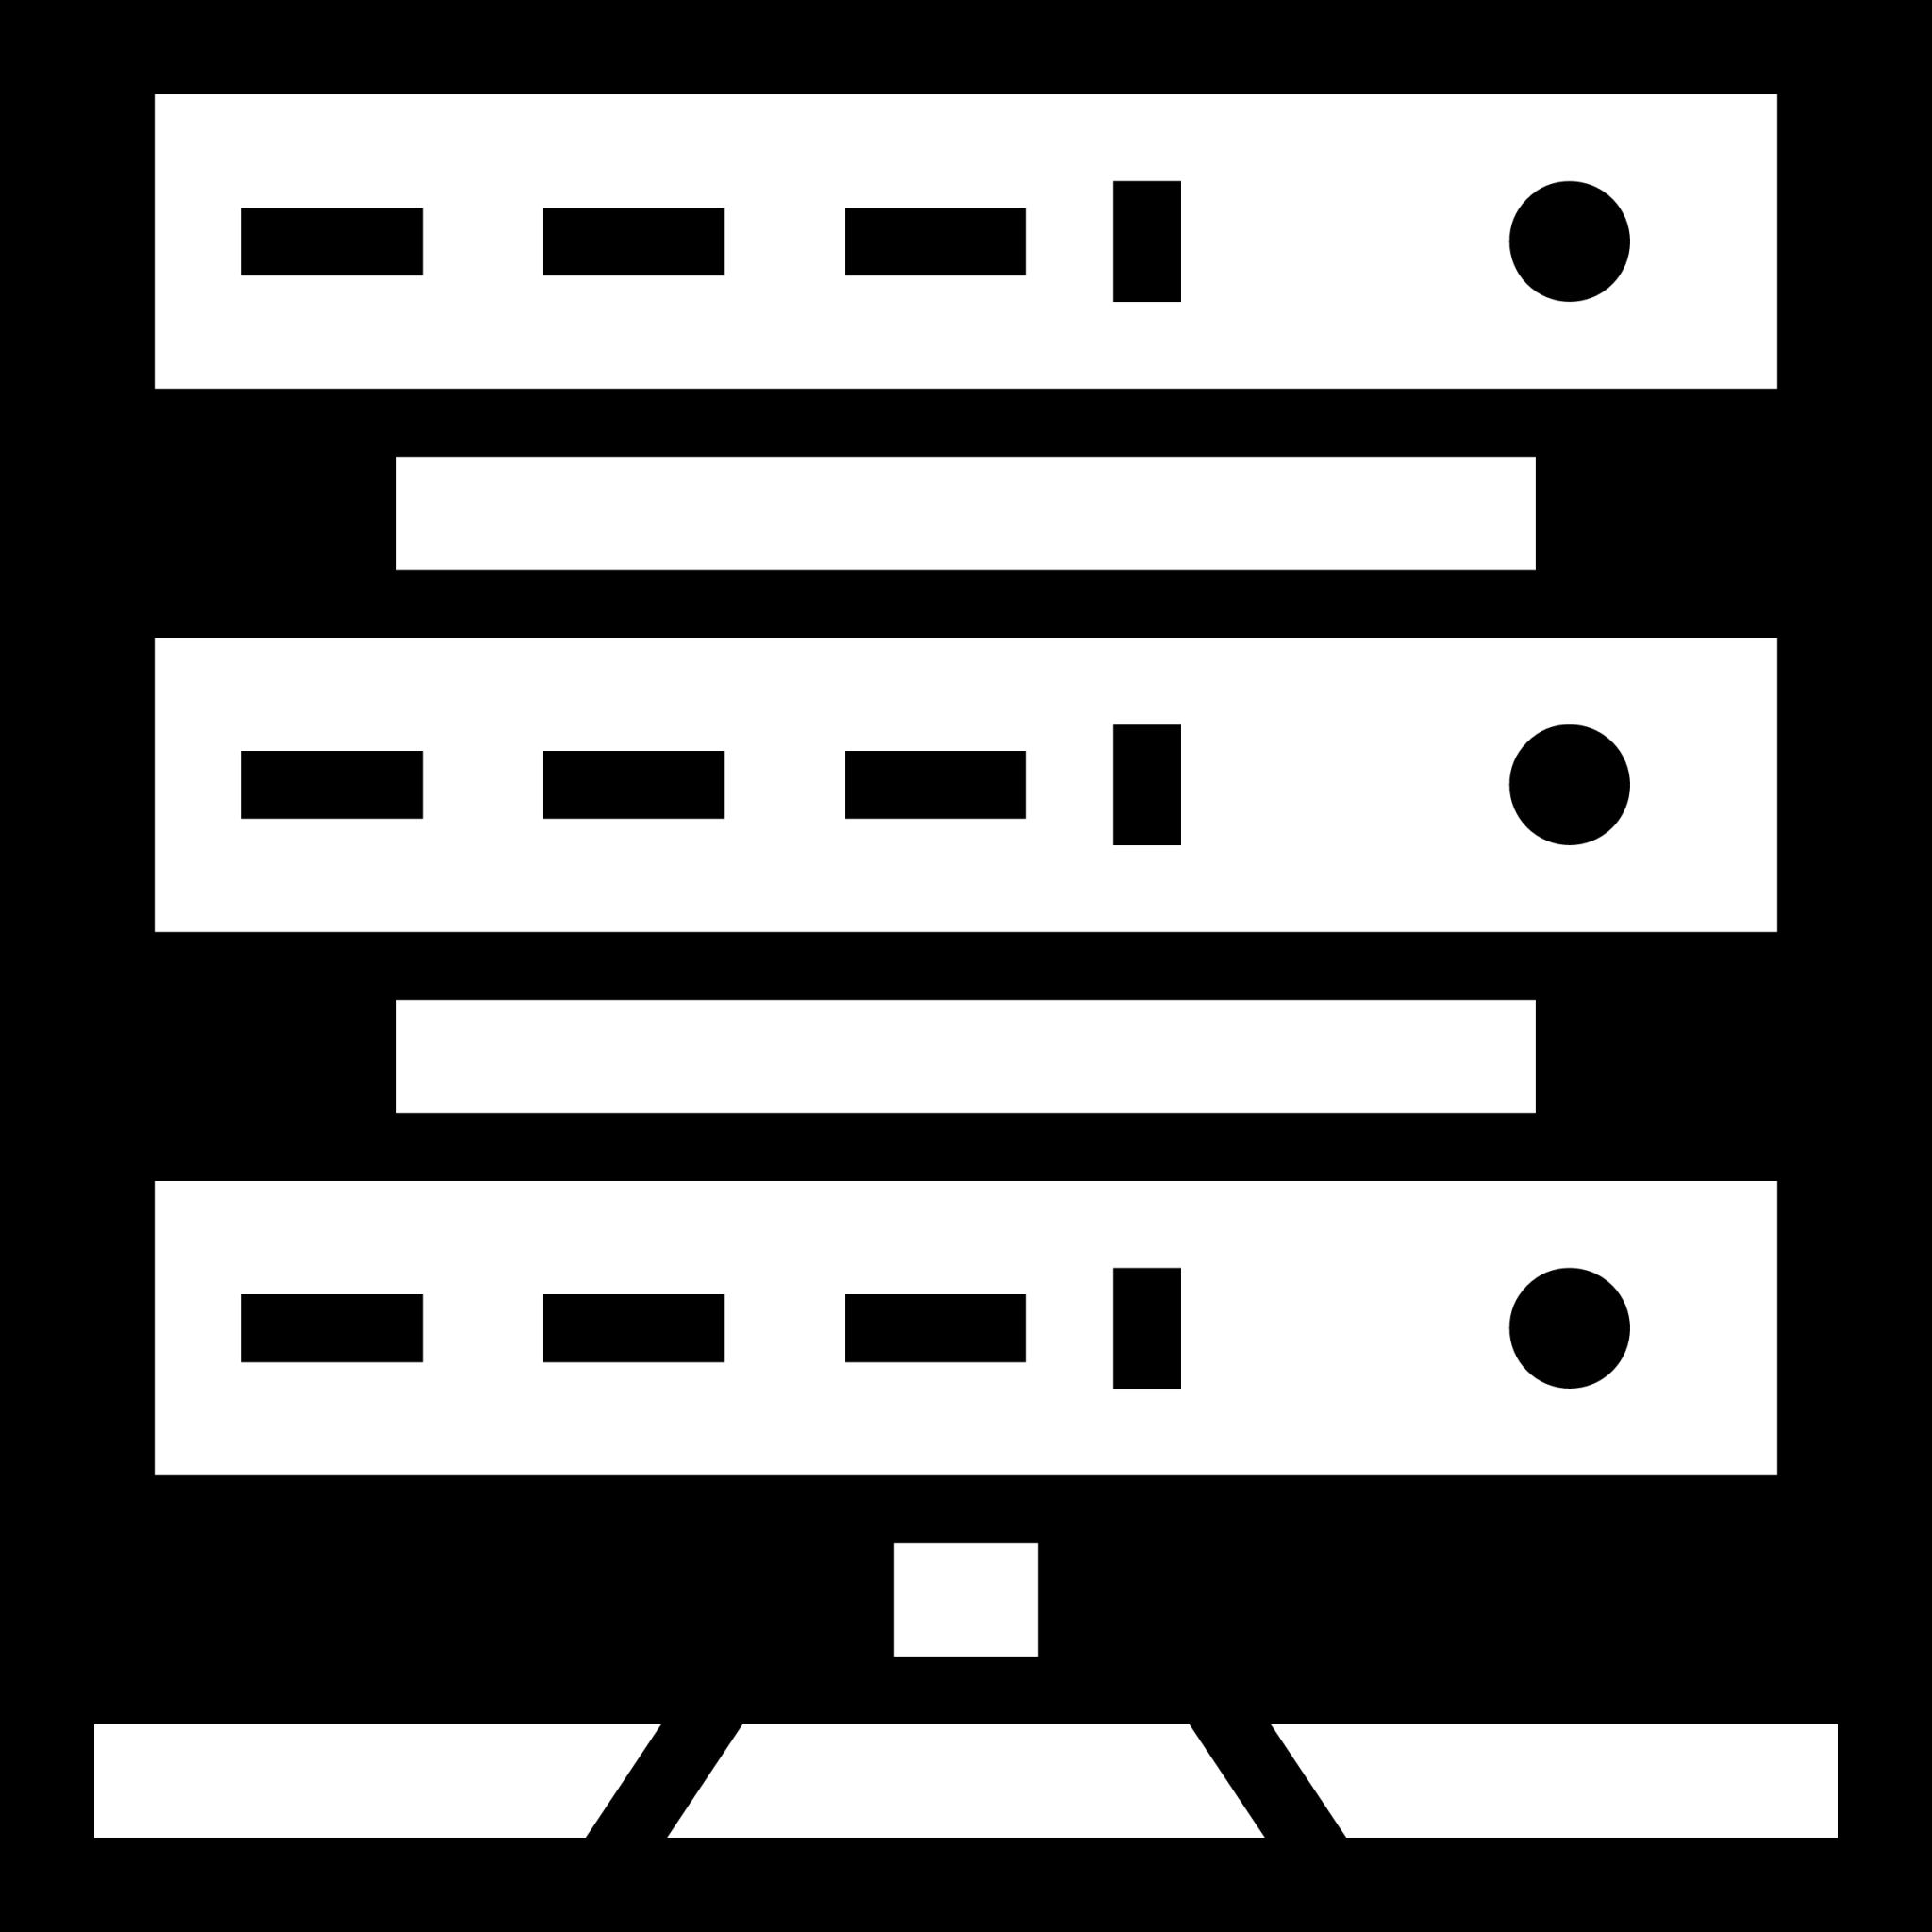 server rack icon